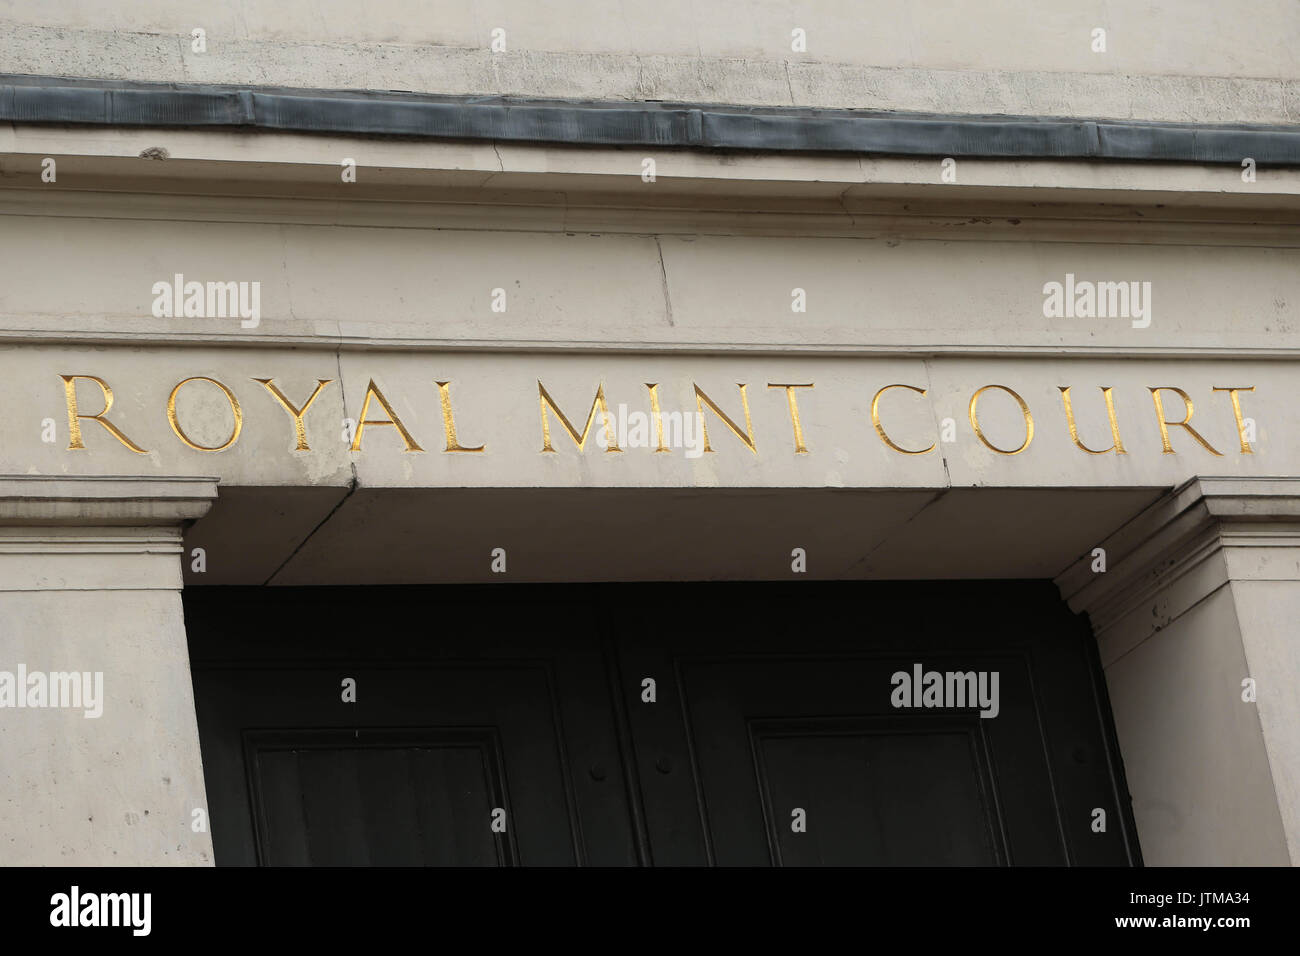 Royal Mint Court ist ein Gebäude aus dem 19. Jahrhundert, die sich auf wenig Tower Hill in London, England, die als Heimat der Royal Mint serviert. Stockfoto